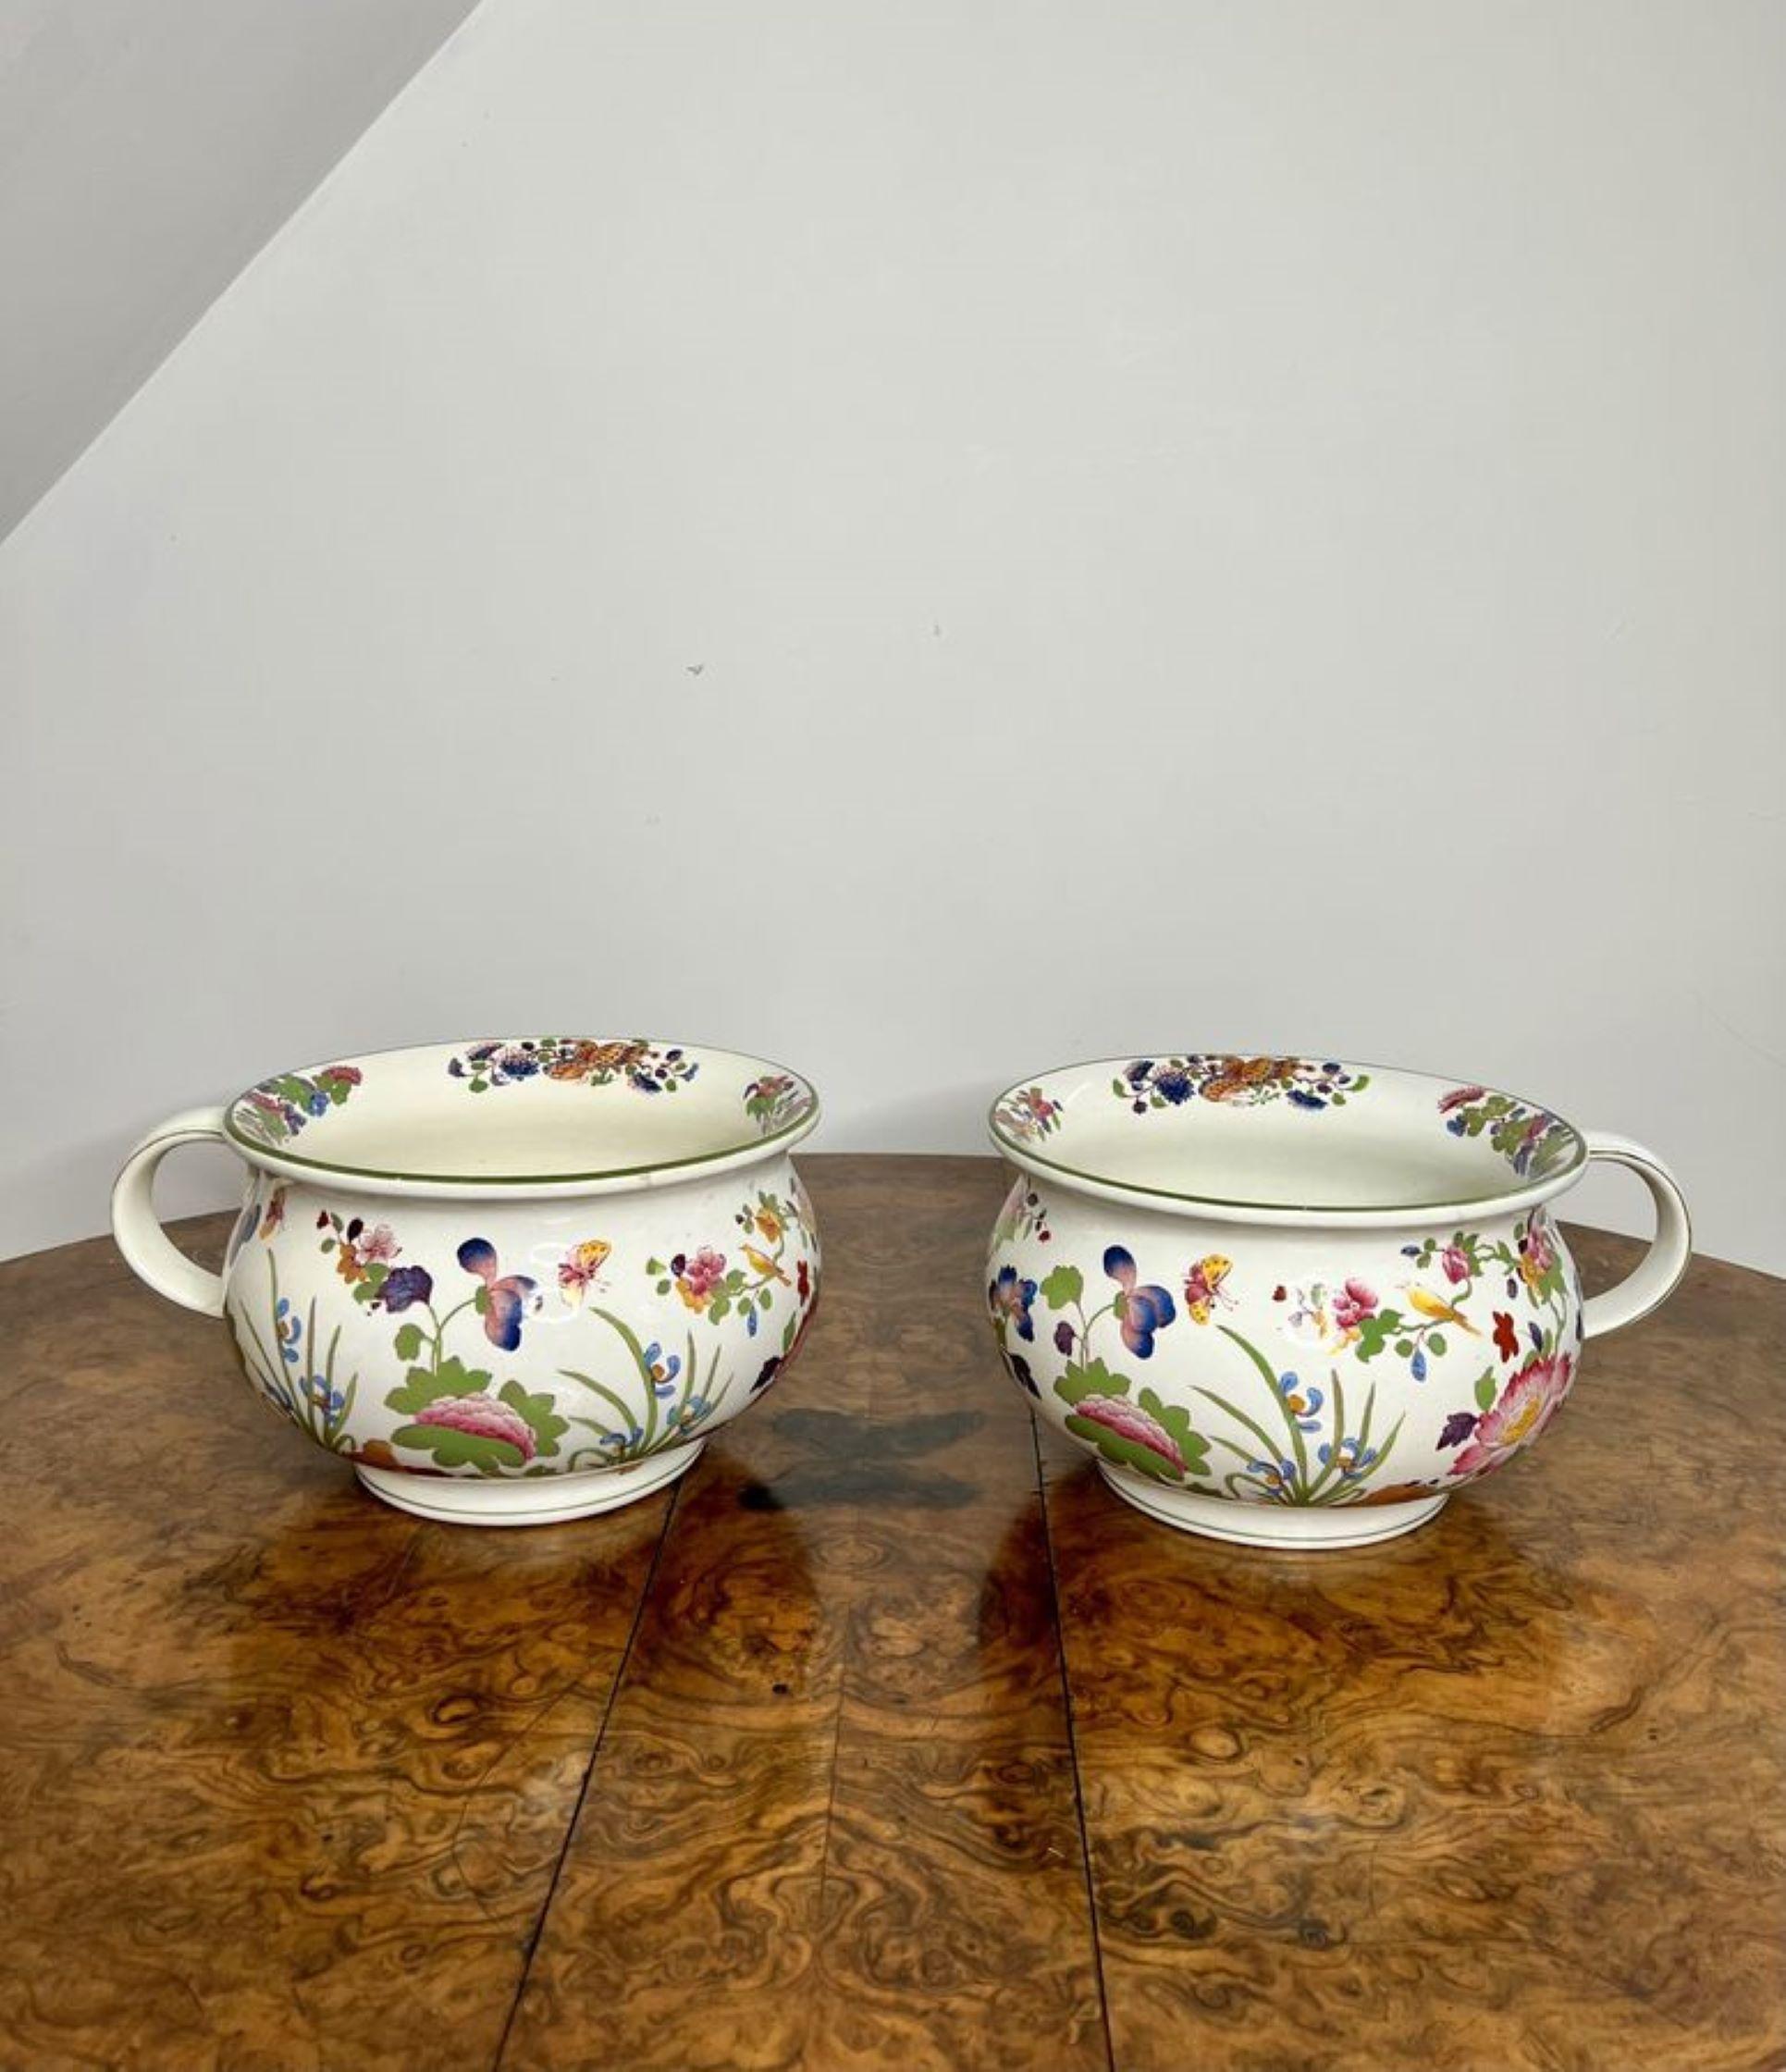 Atemberaubende Qualität antiken Edwardian Wedgwood Etruria Keramik Badezimmer-Set, bestehend aus einem Krug und Schüssel, zwei Nachttöpfe, ein Zahnbürstenhalter und eine Seifenschale, mit einer Creme Grund und floralen Dekoration in fantastischen